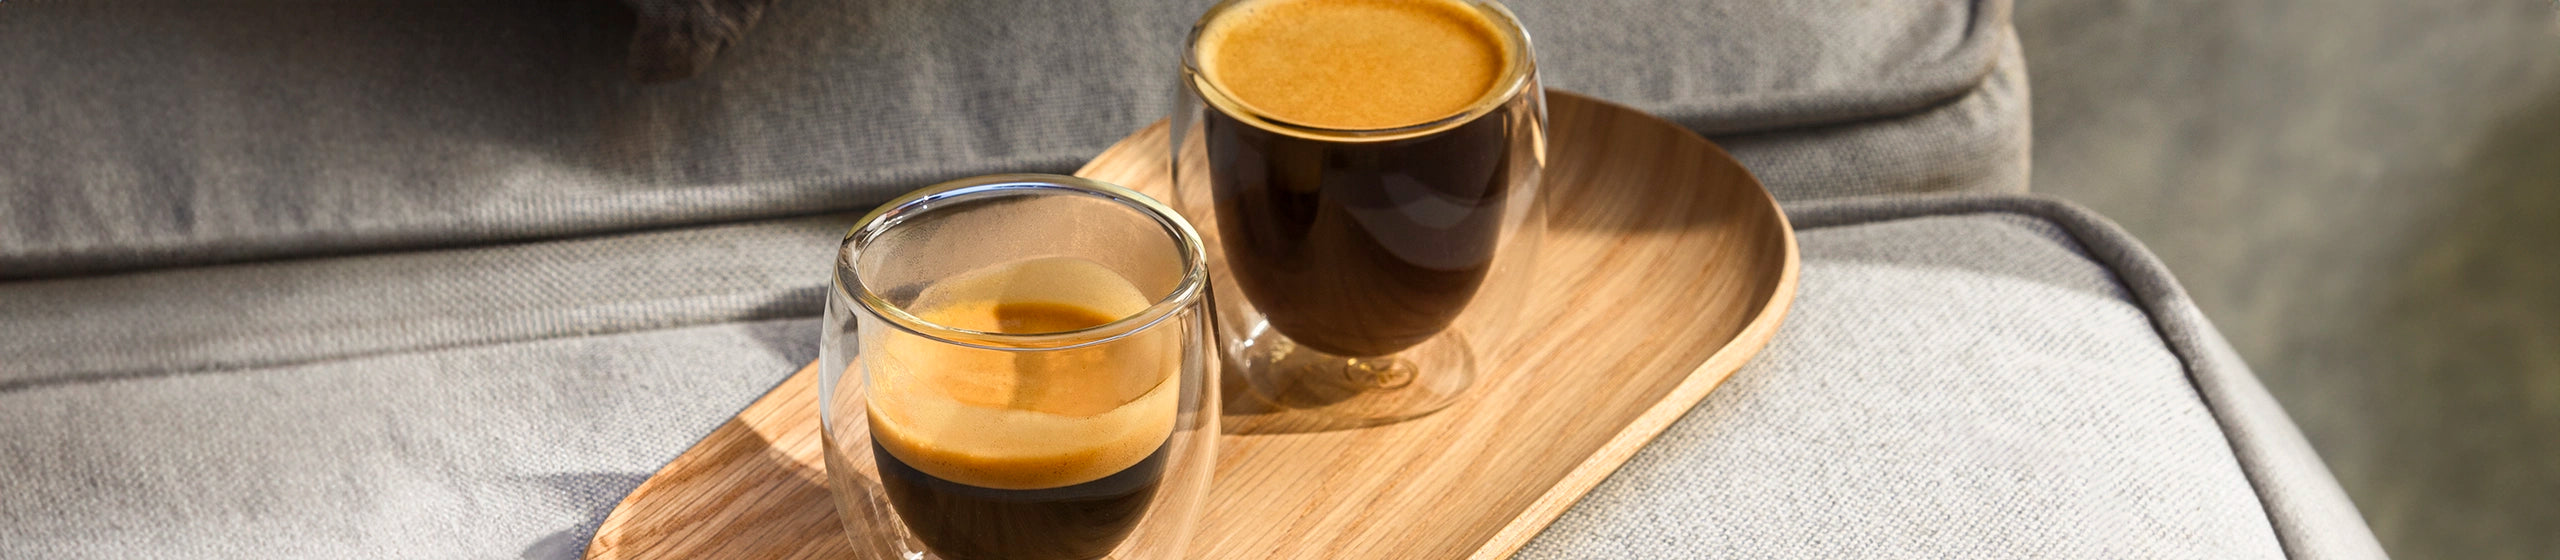 Cafetera Espresso de Cápsula – Sur la Table